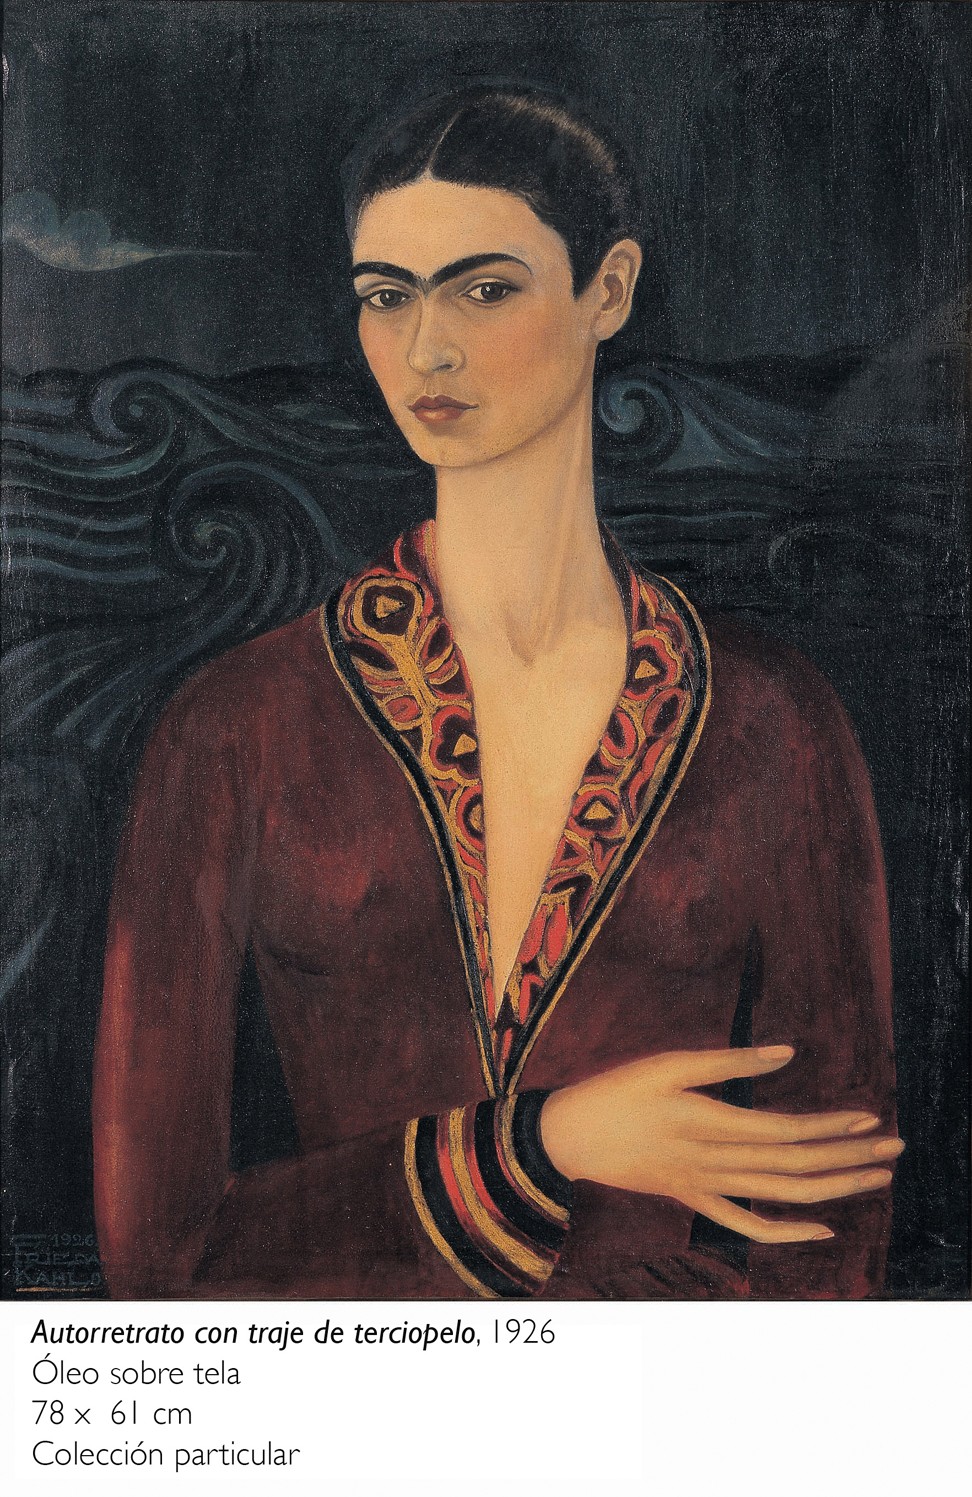 Reproduction of Frida Kahlo’s ‘Self-portrait in a velvet dress’ (1926).